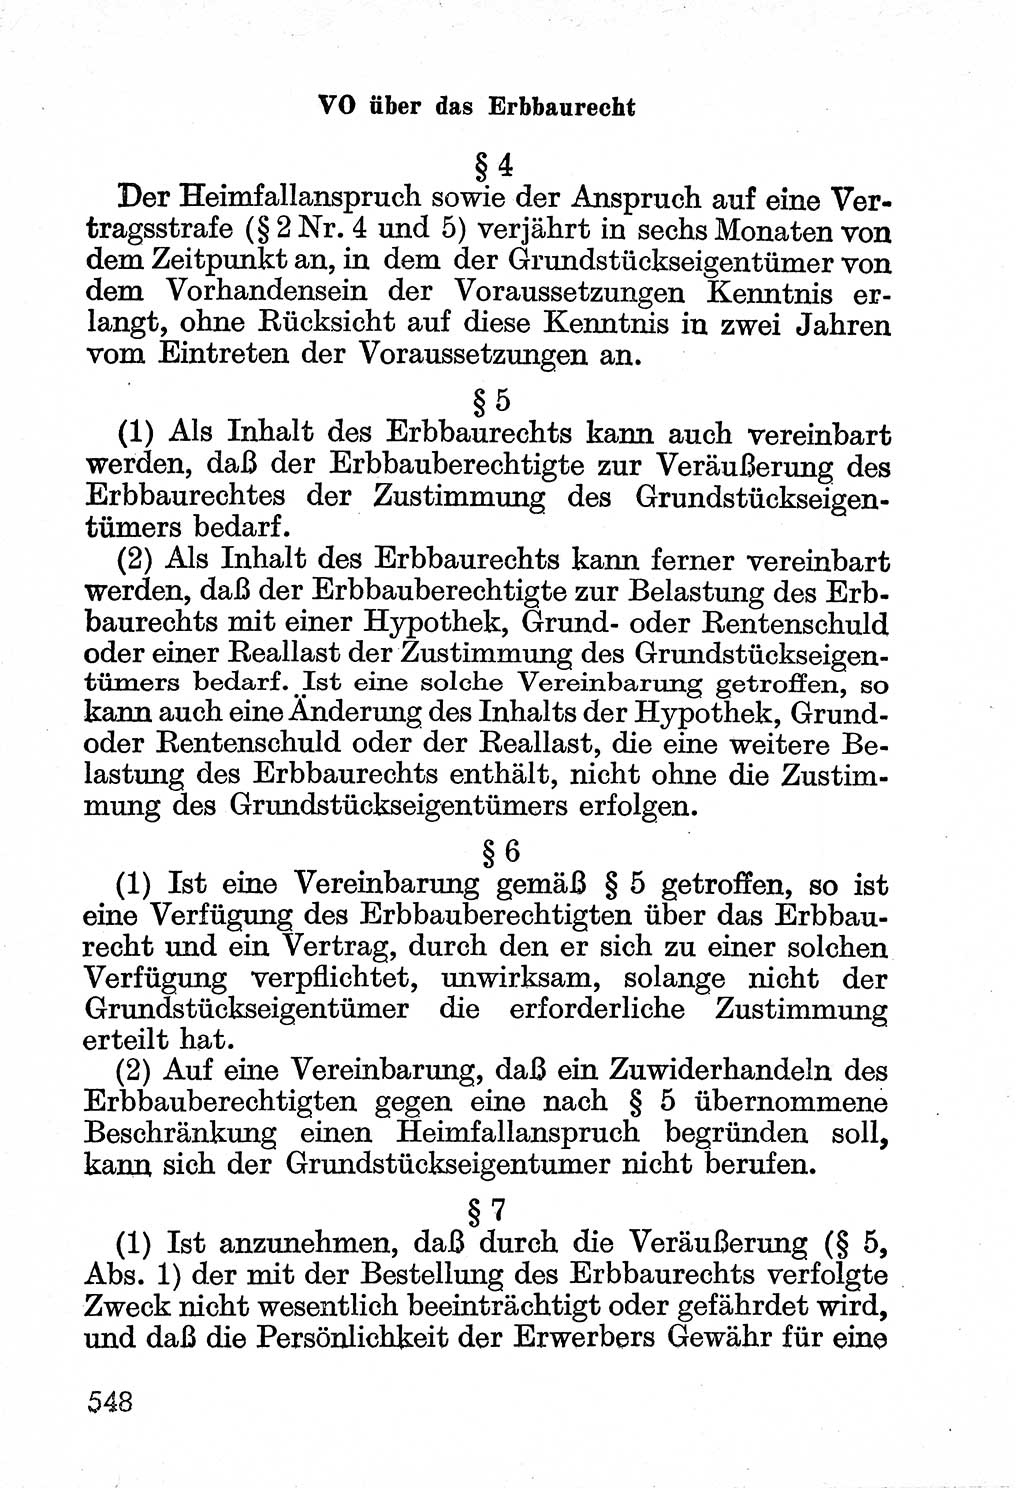 Bürgerliches Gesetzbuch (BGB) nebst wichtigen Nebengesetzen [Deutsche Demokratische Republik (DDR)] 1956, Seite 548 (BGB Nebenges. DDR 1956, S. 548)